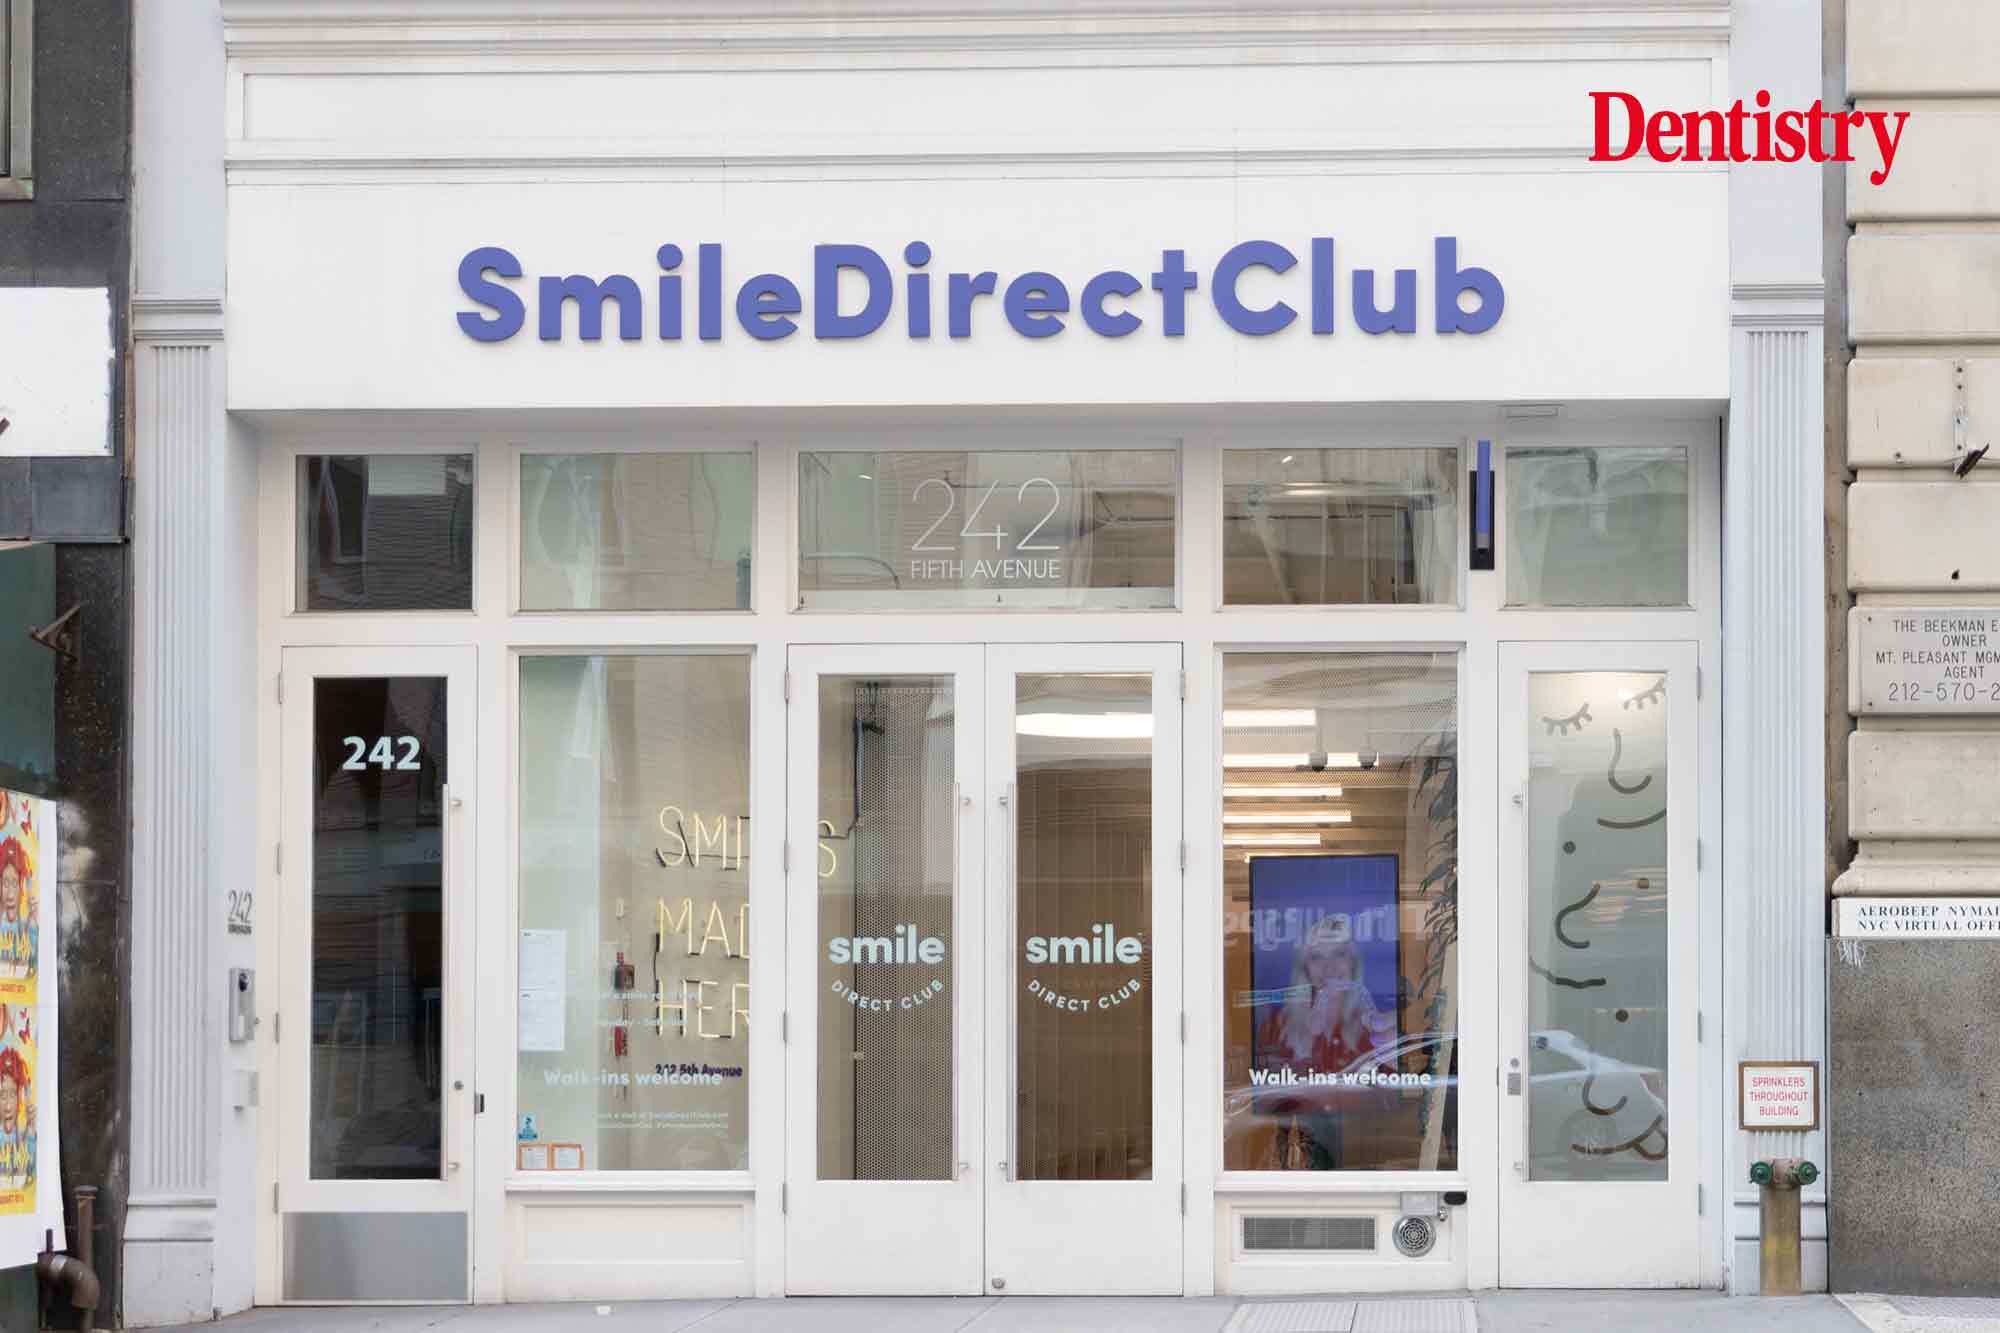 Club Shop Direct